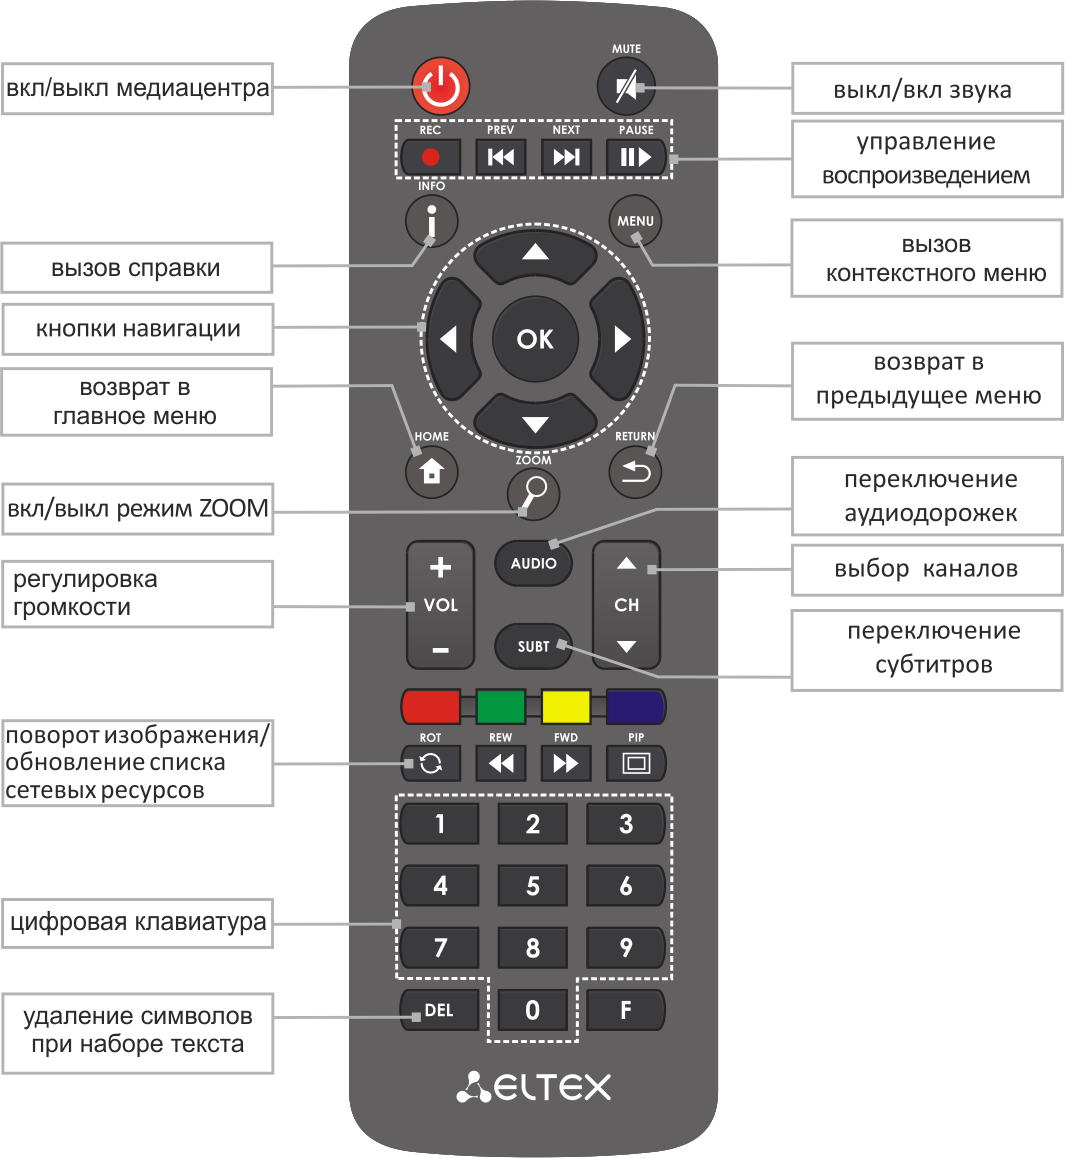 Блокировка кнопок на пульте телевизора. Пульт управления Eltex для приставки цифрового телевидения. Пульт для приставки 1hdva. Пульт для приставки Eltex NV-711. Кнопка таймера на пульте для телевизора LG.